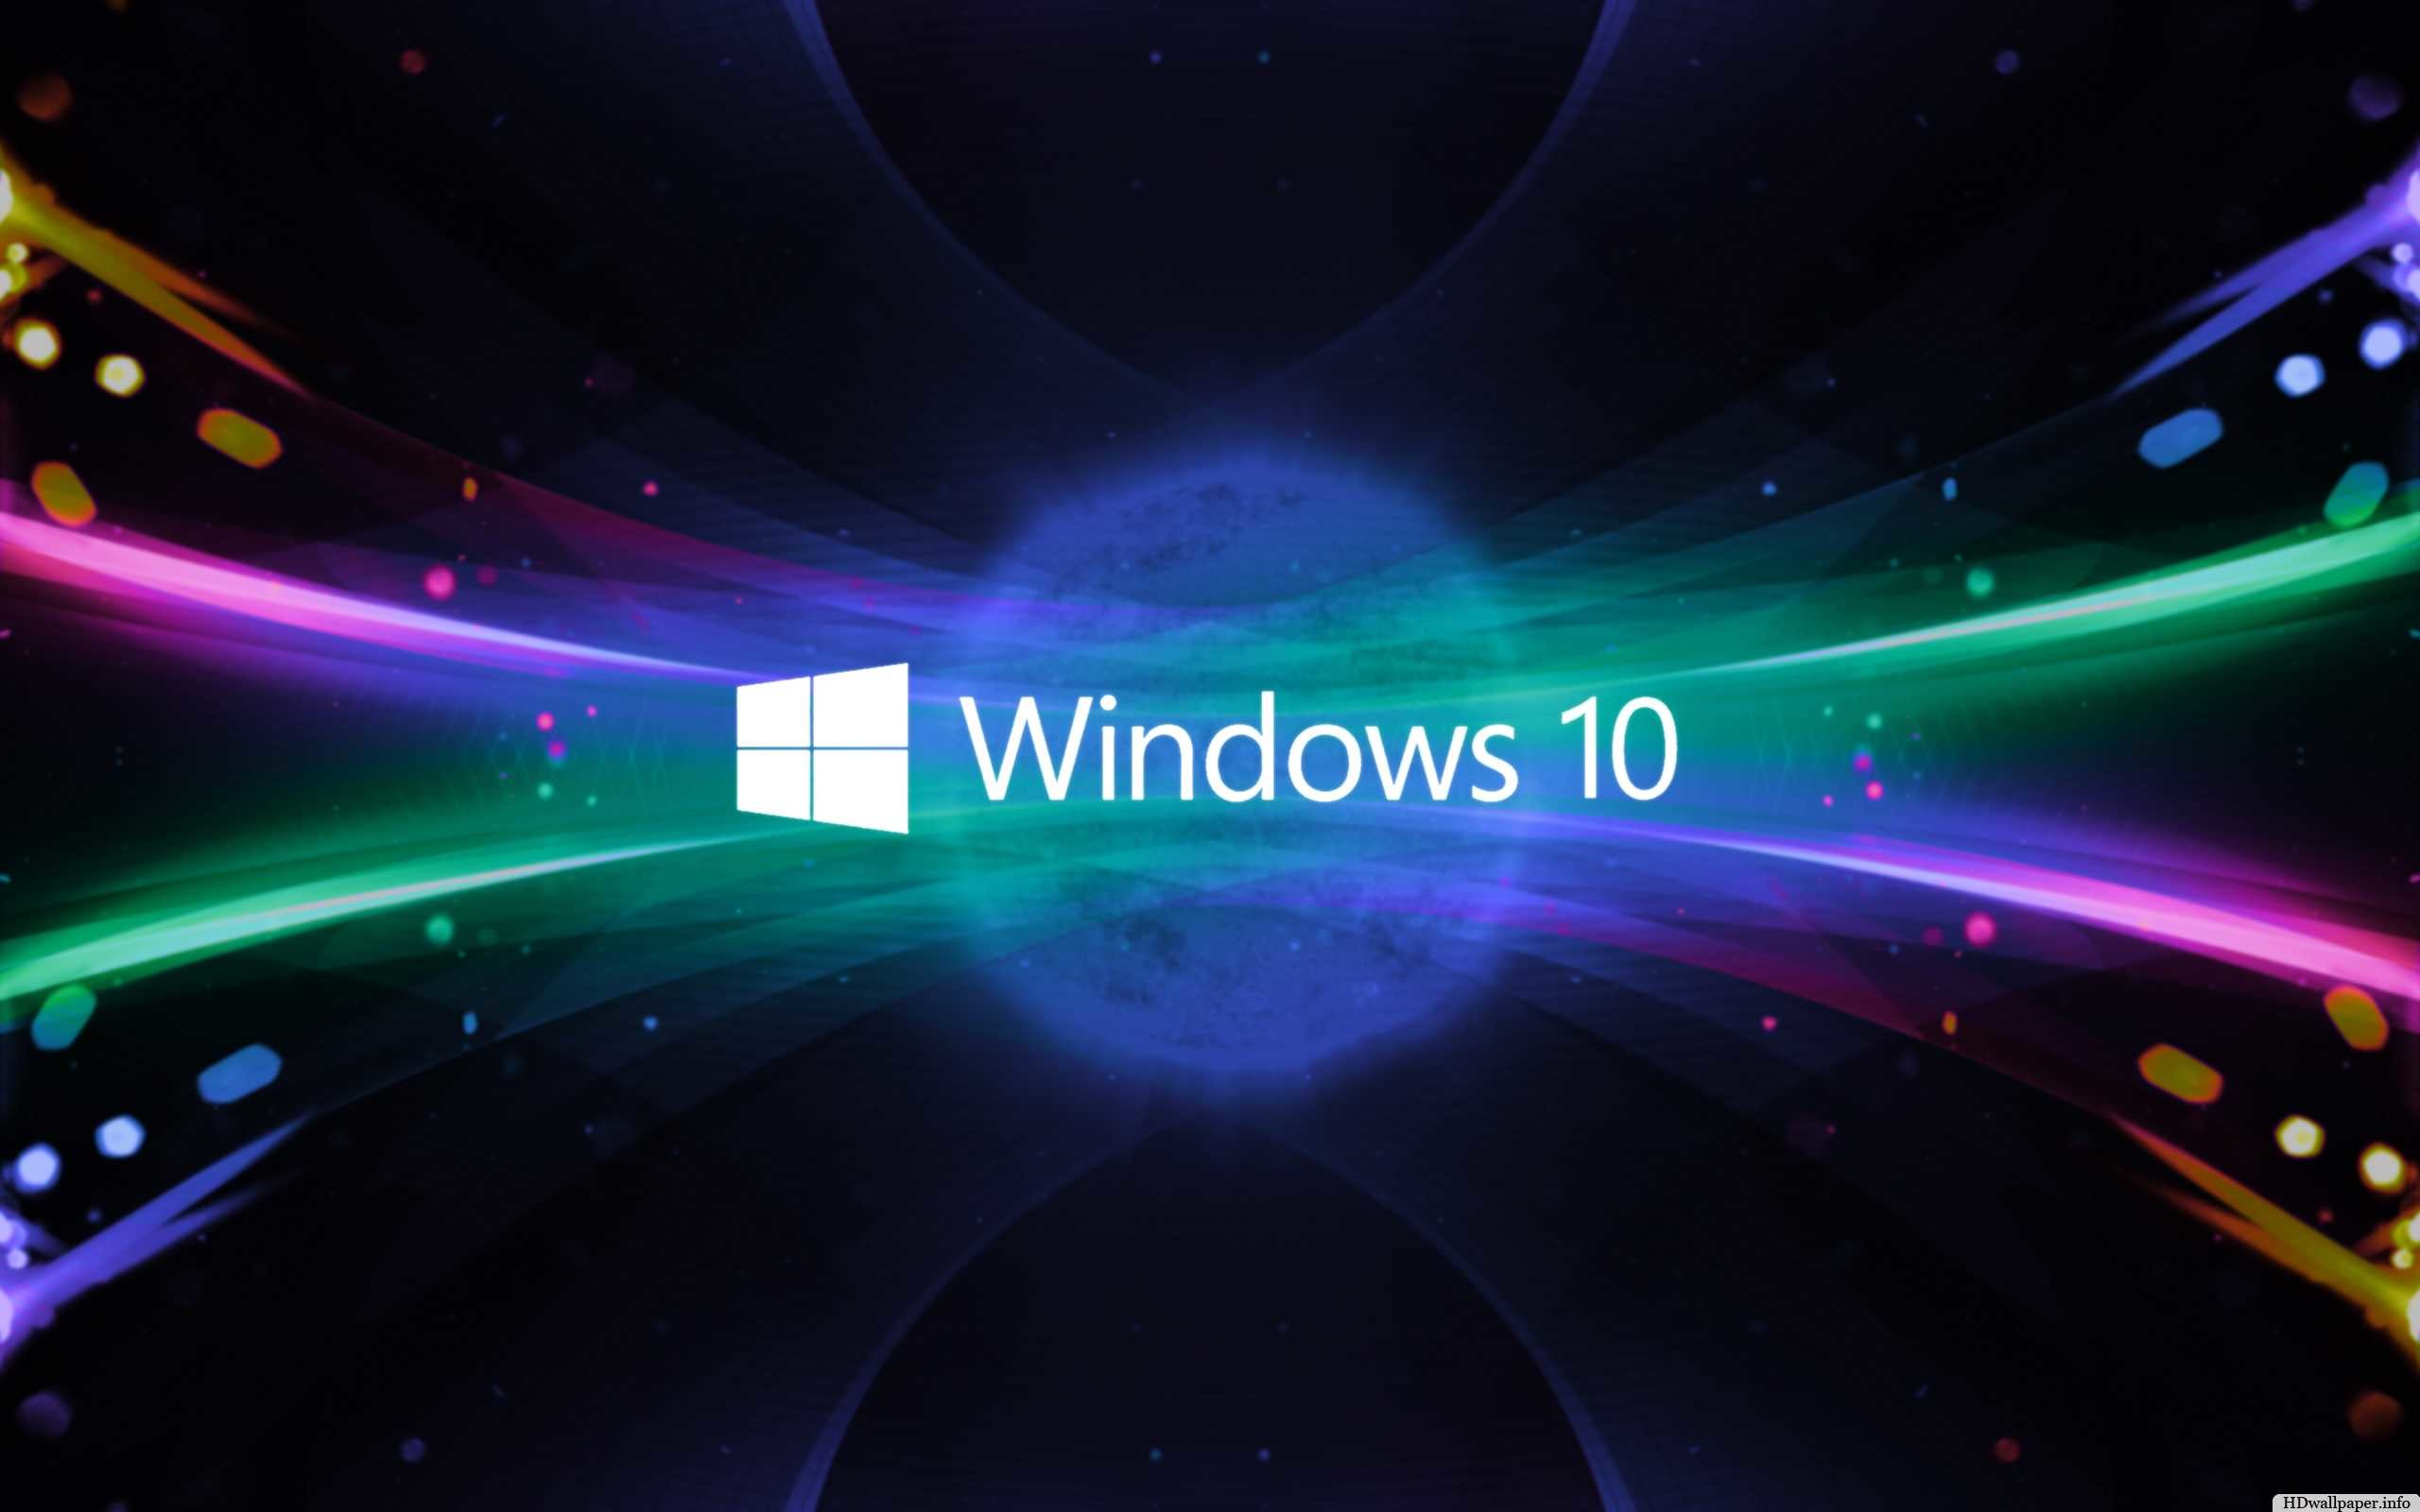 Hình nền 3D miễn phí cho Windows 10: Làm mới màn hình máy tính của bạn với những hình nền 3D tuyệt đẹp. Khám phá những thiết kế độc đáo và xem chúng cất cánh trên máy tính của bạn.